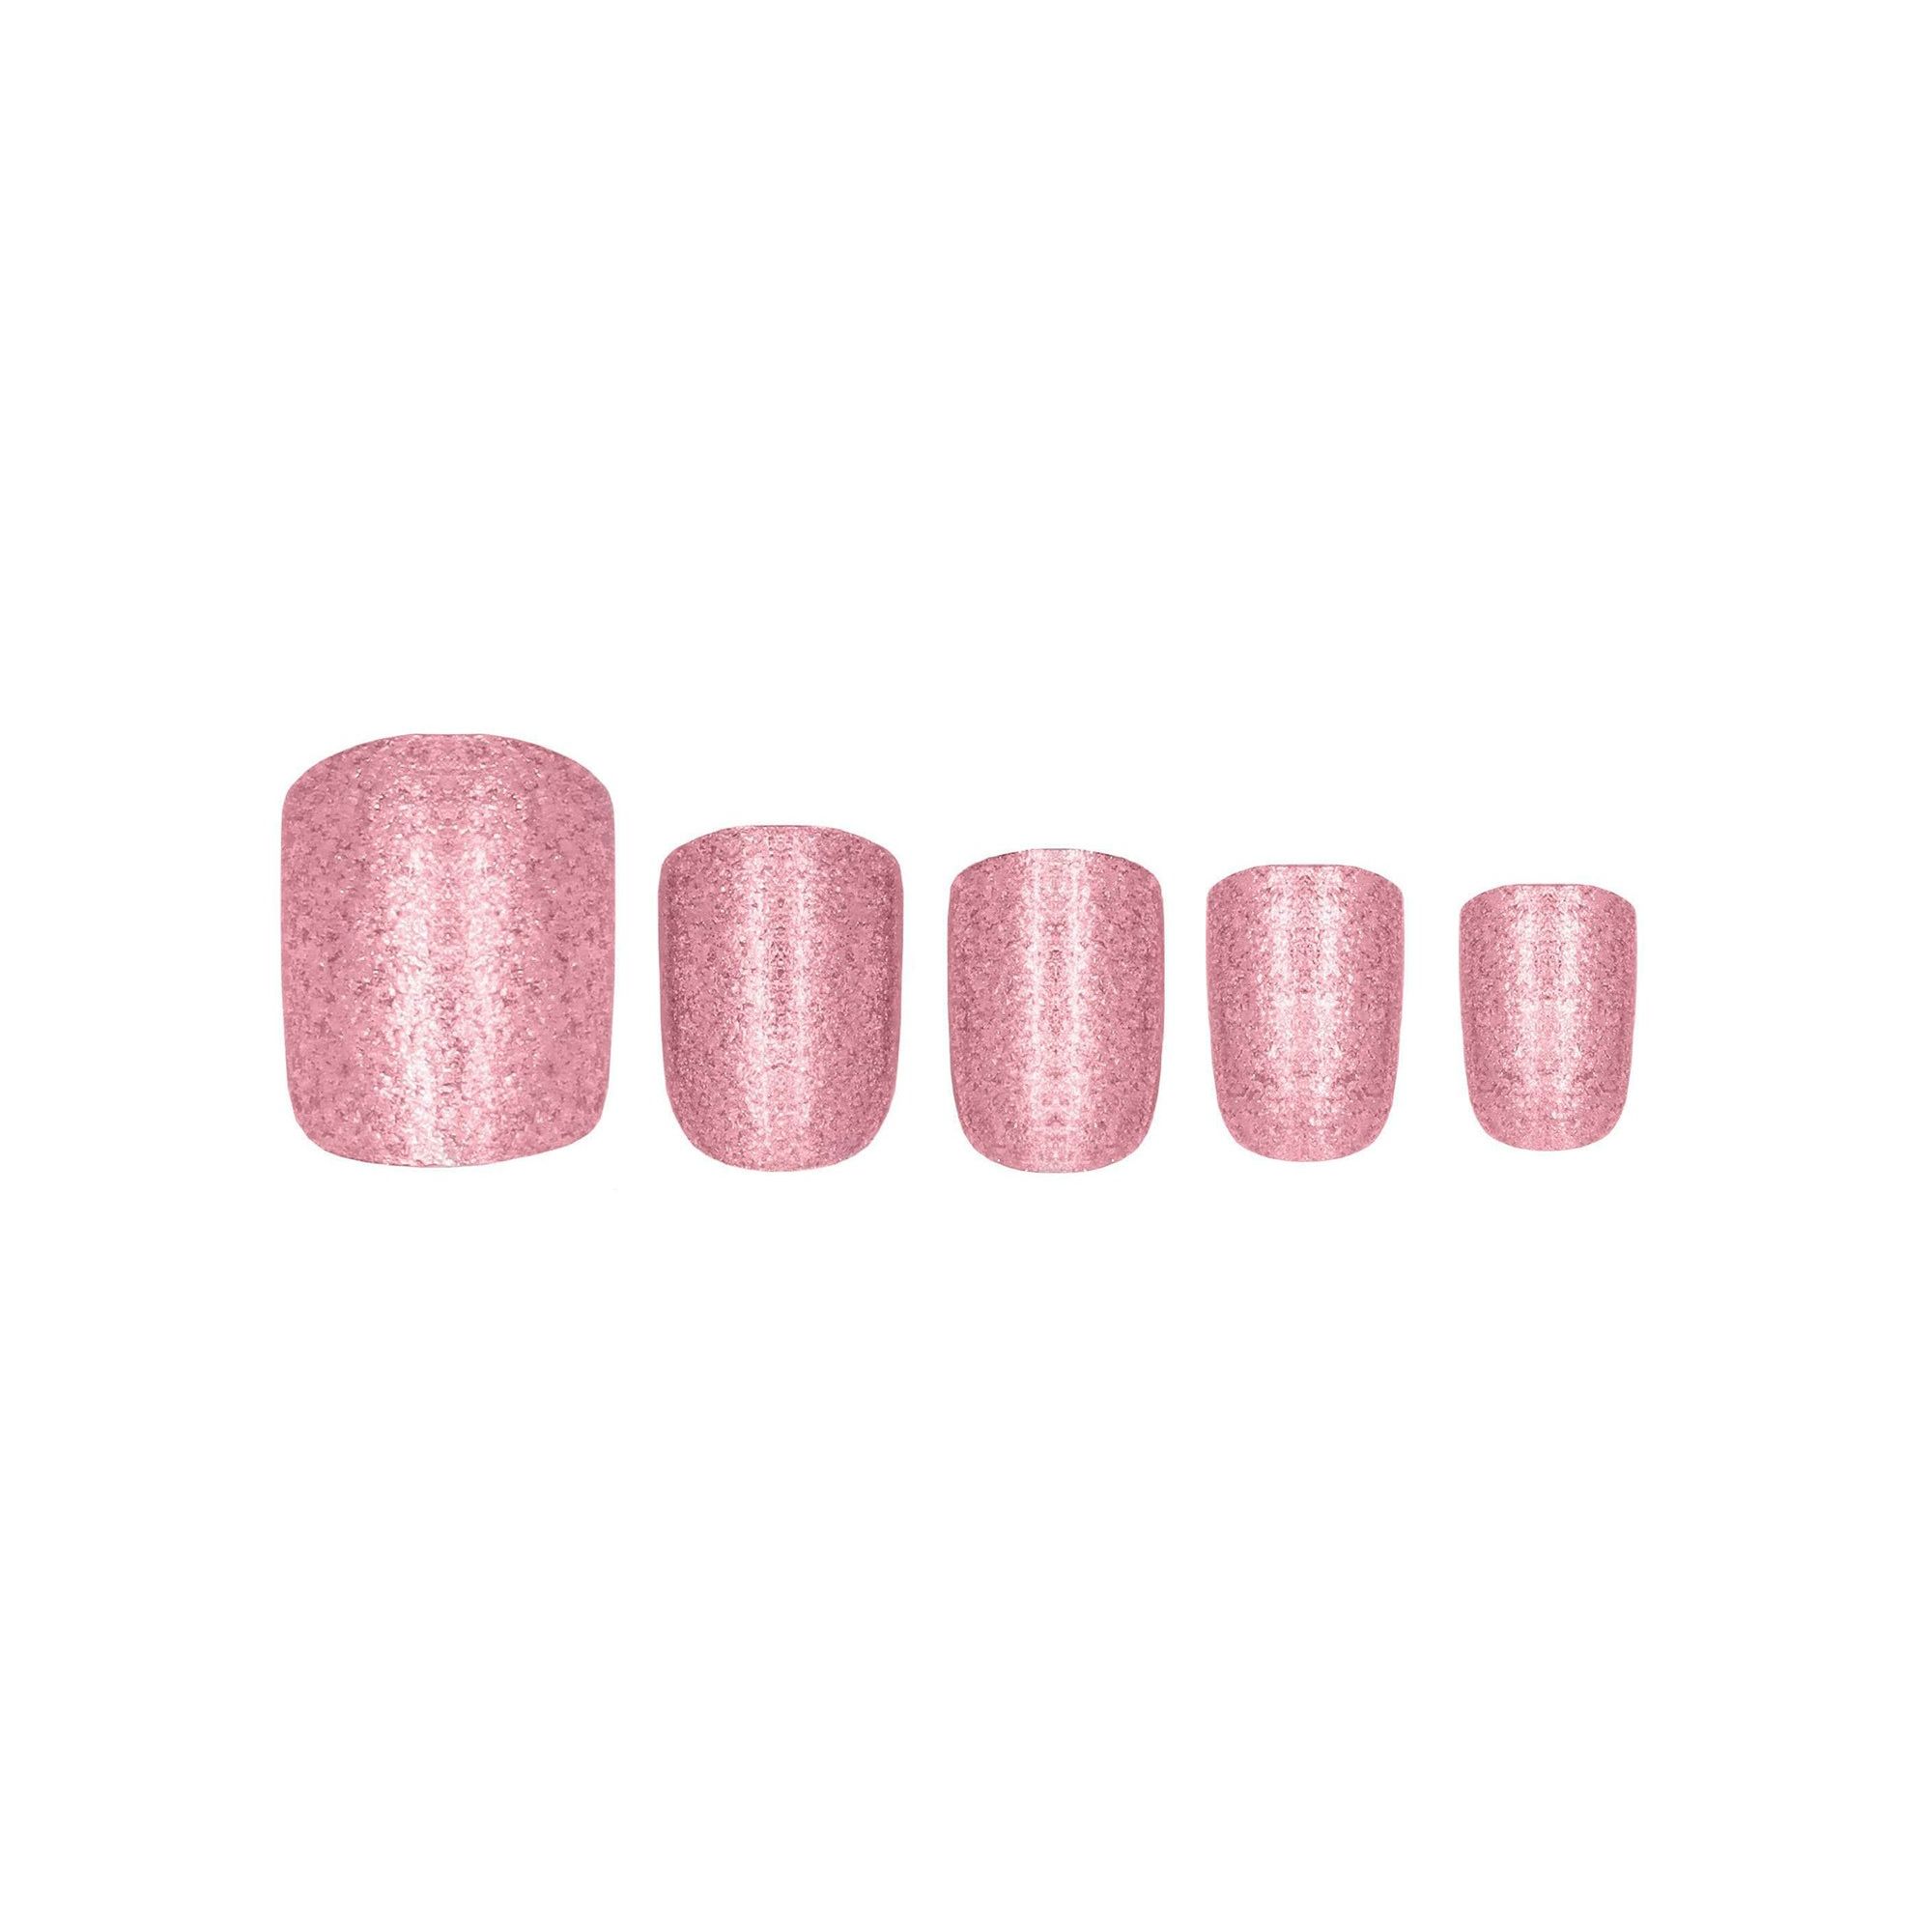 Künstliche Nägel - Glamorous Nails